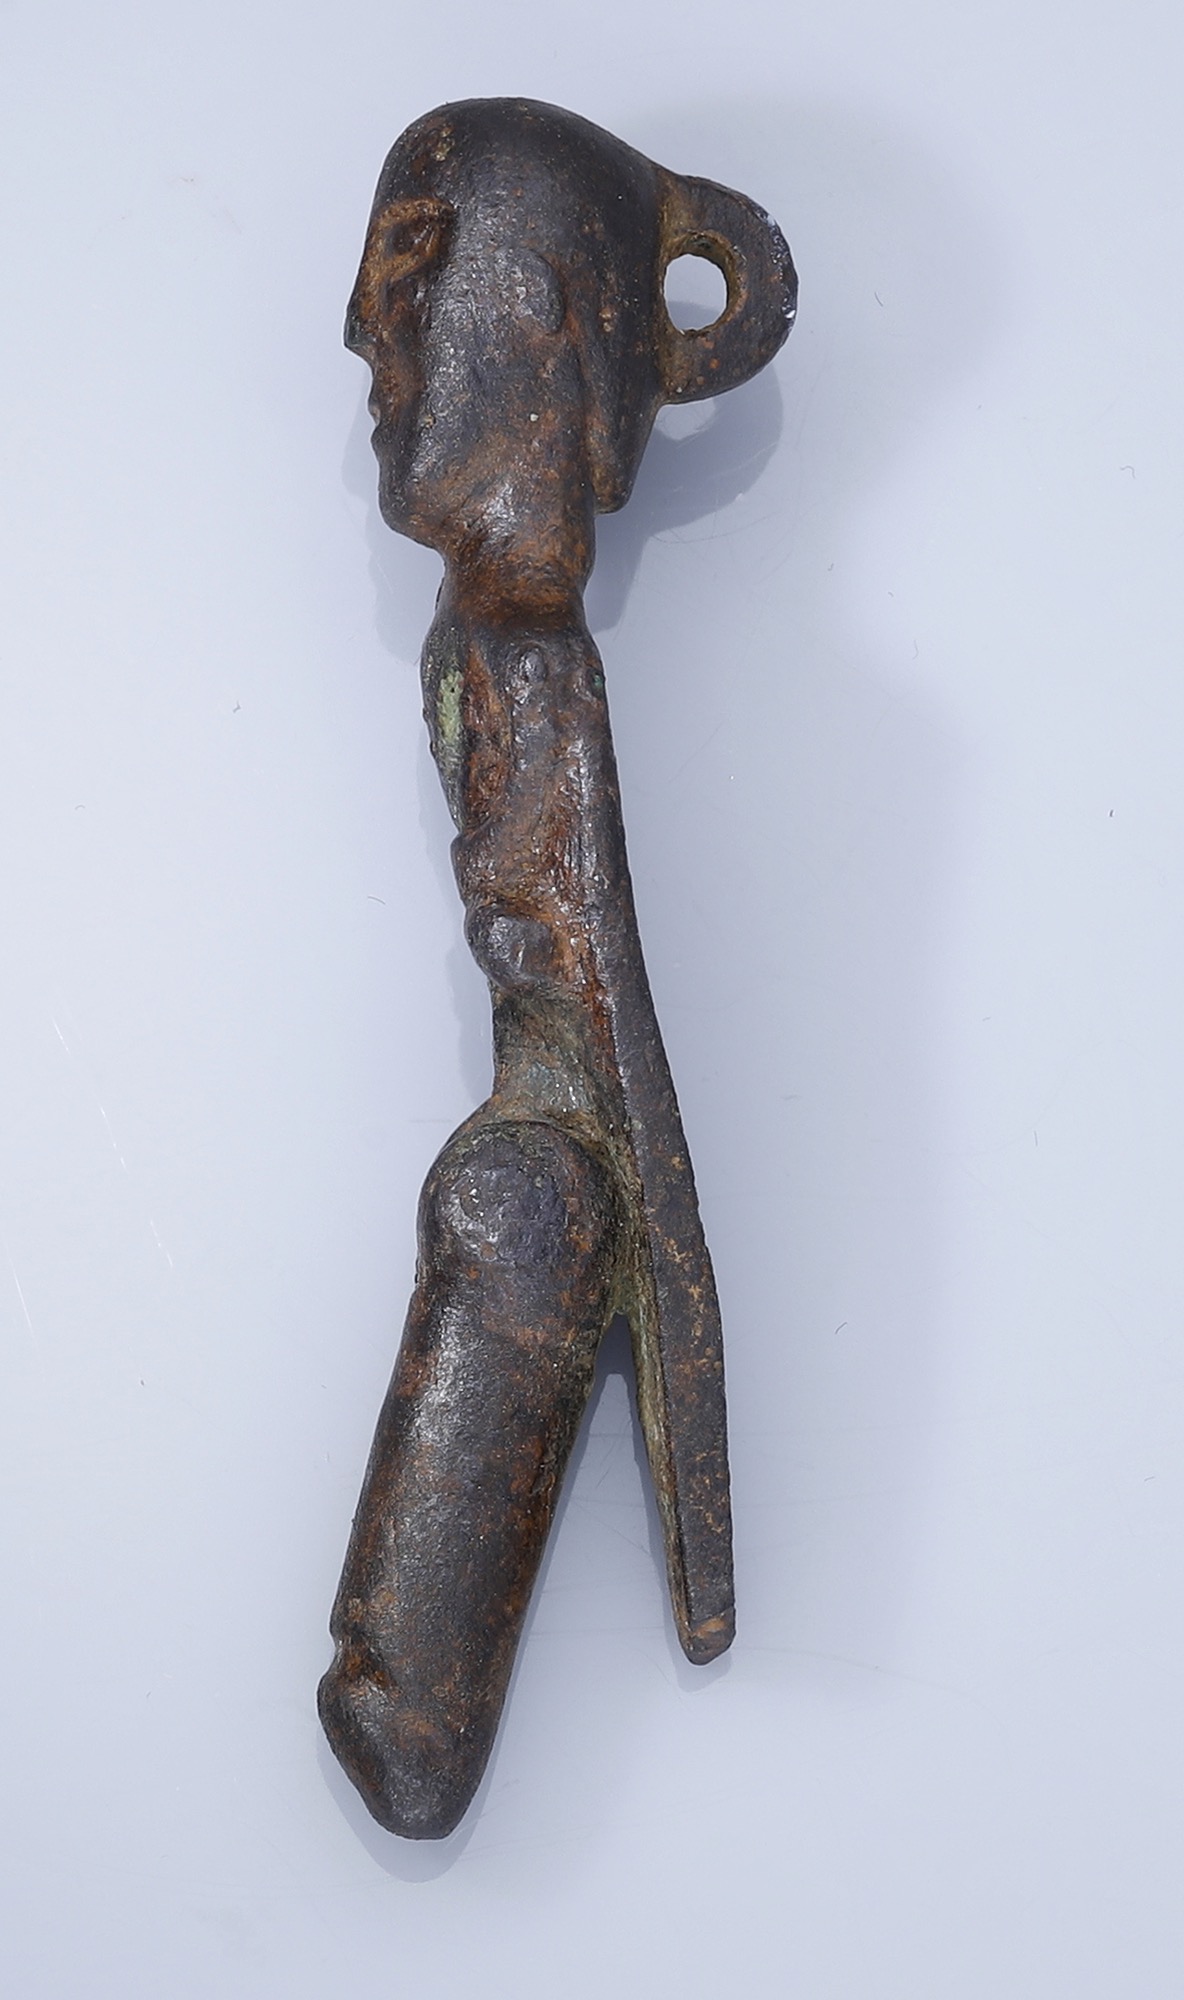 Detektorista našel unikátní keltskou figurku s obřím pohyblivým penisem